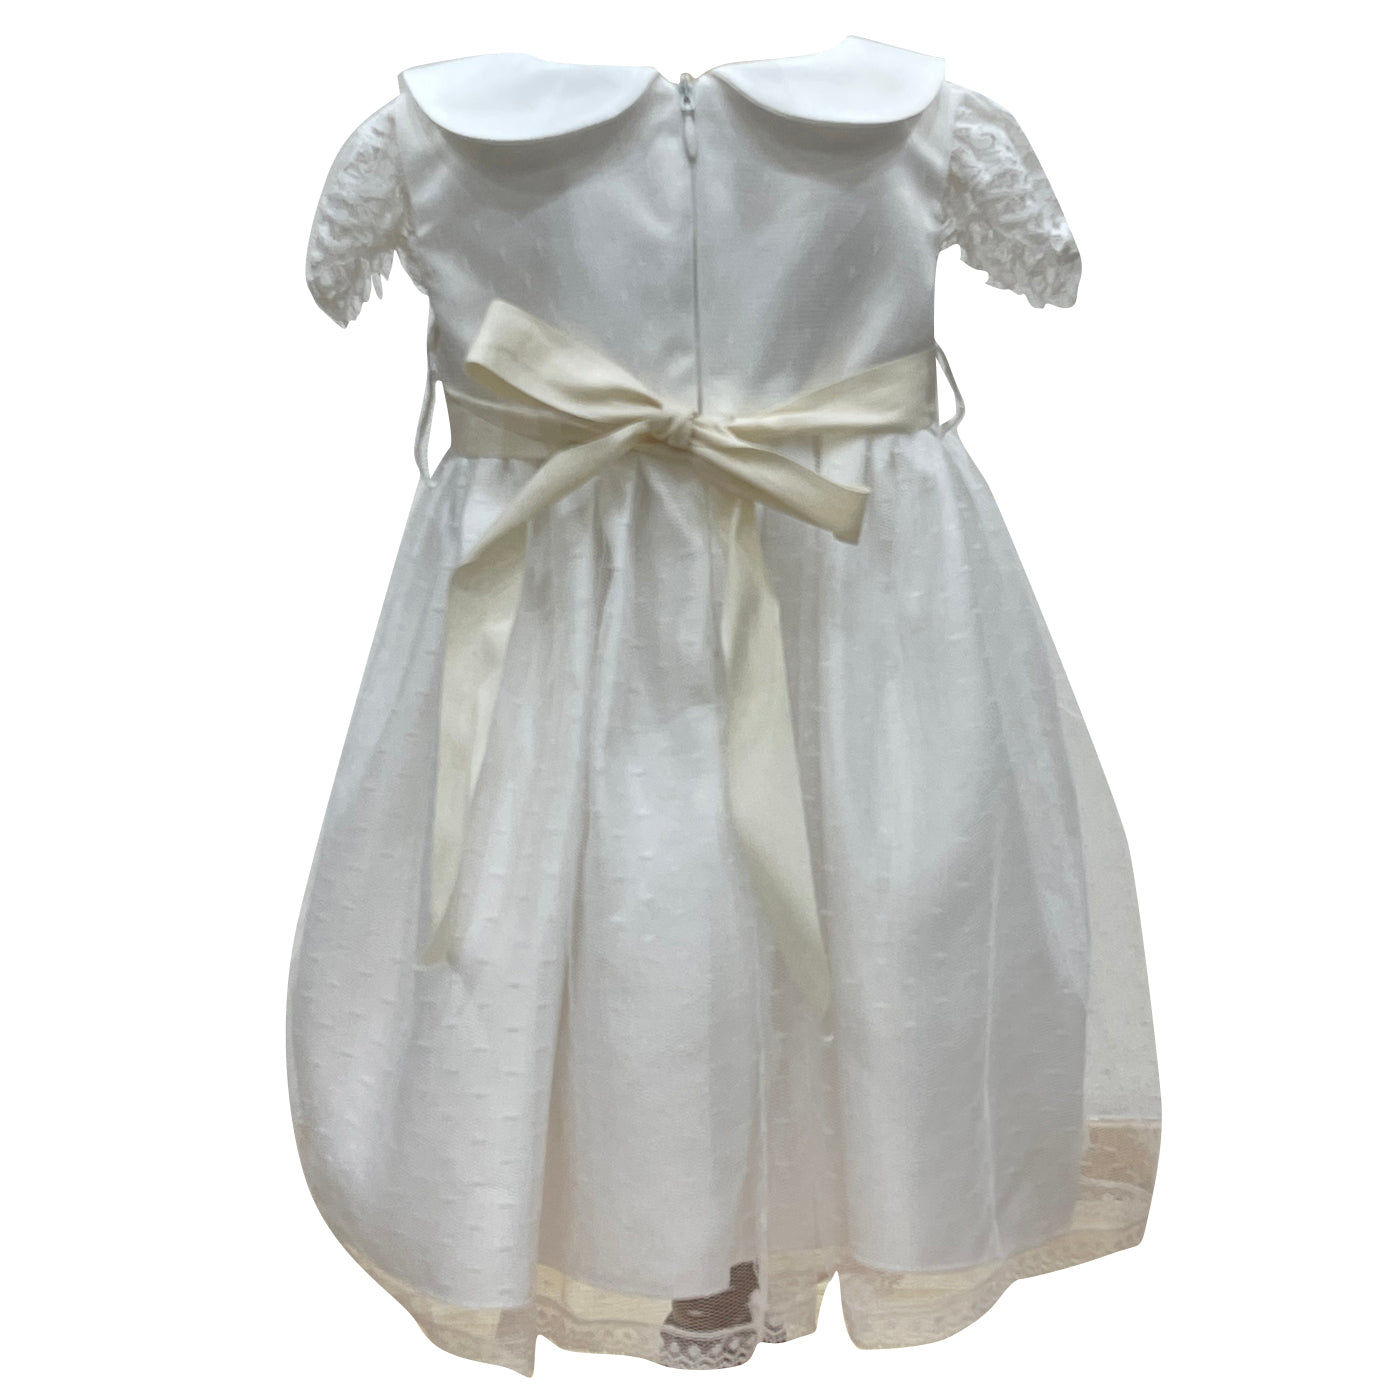 Bella Brilli Roma vestito neonata